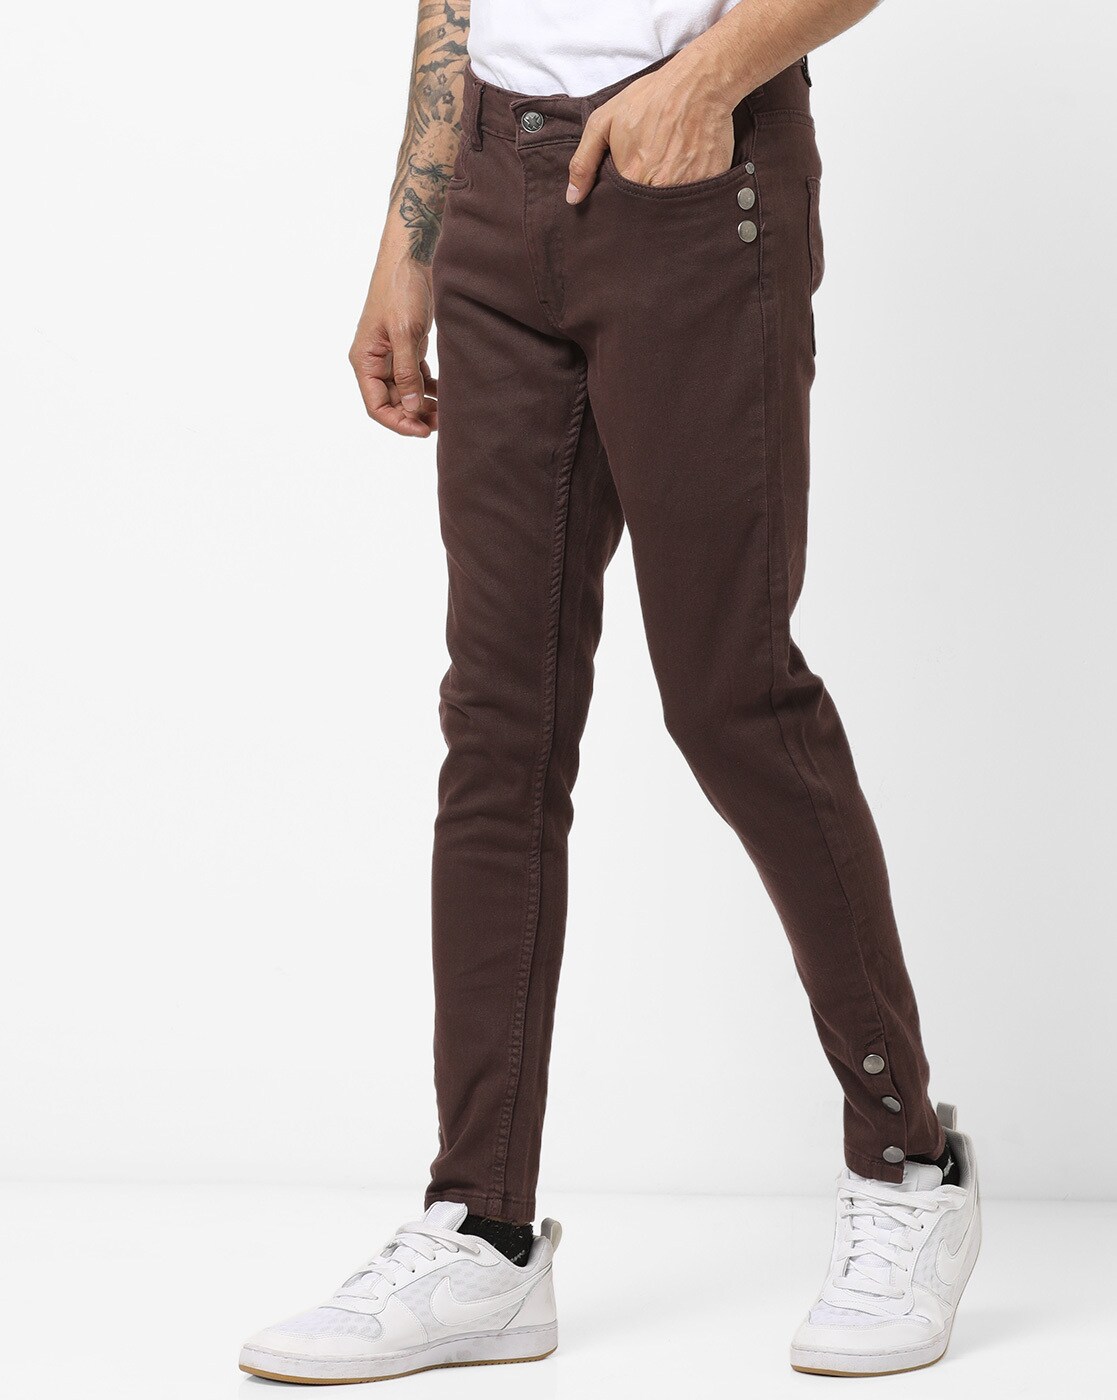 maroon skinny jeans mens